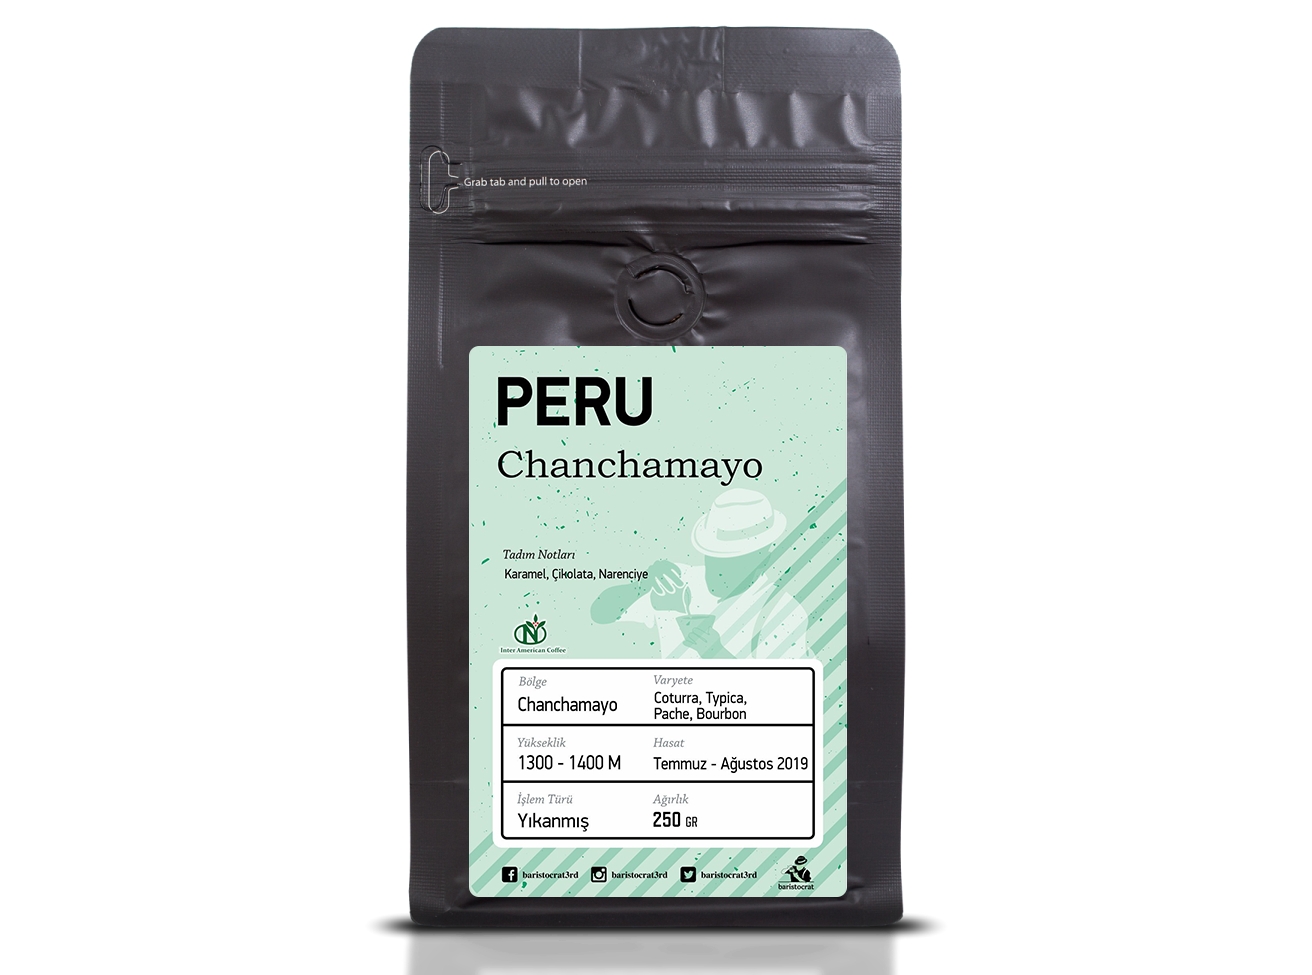 Peru Chanchamayo